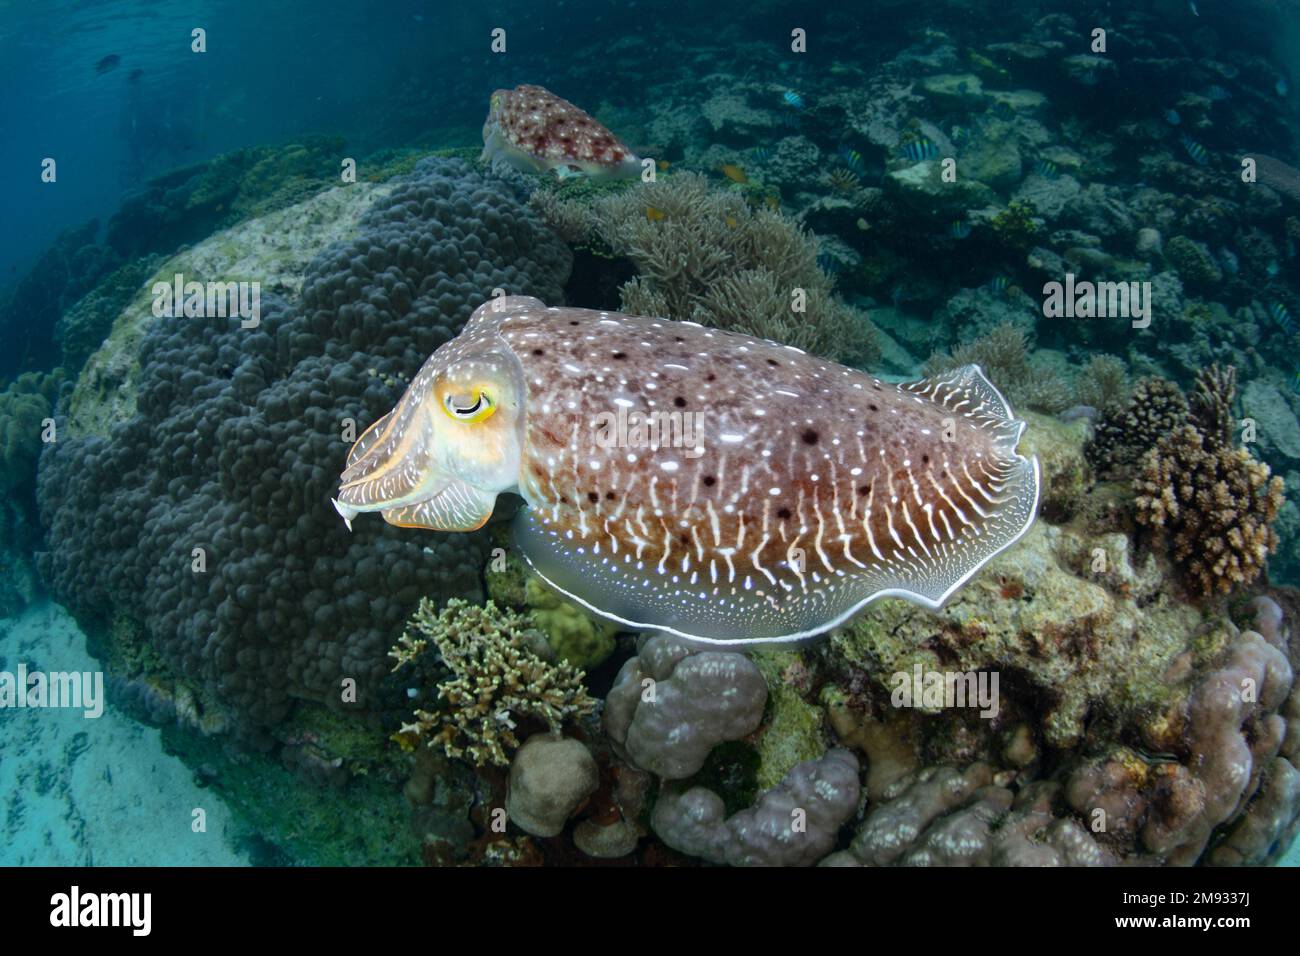 Ein Broadclub Tintenfisch, Sepia latimanus, schwebt über einem flachen Korallenriff auf den Salomonen. Diese Art findet sich oft in flachen Lebensräumen. Stockfoto